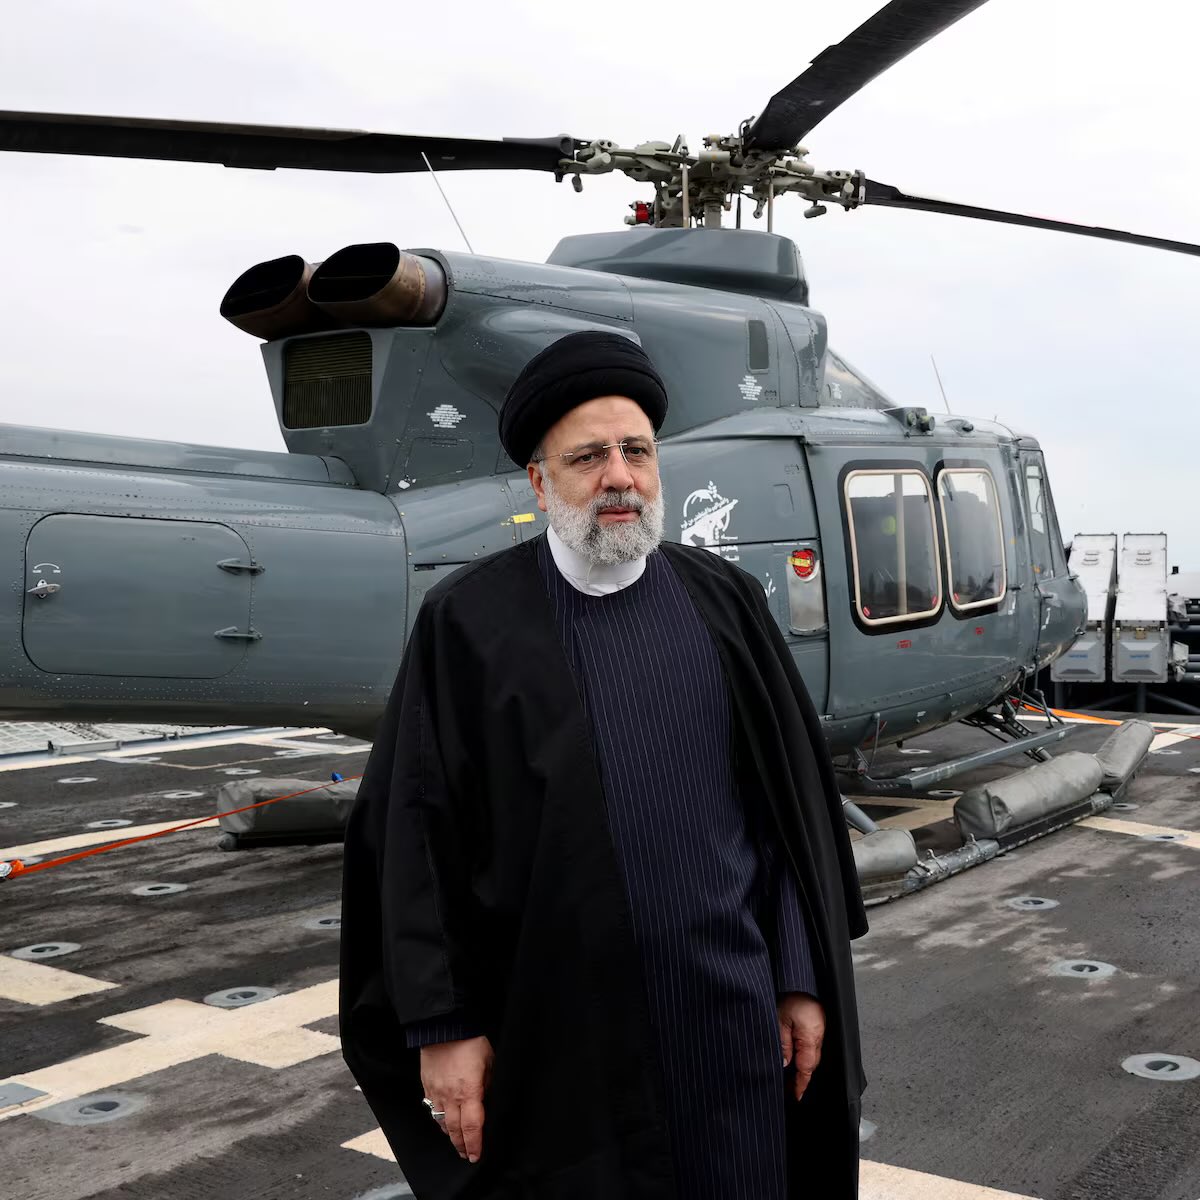 ईरानी राष्ट्रपति का जो हेलीकॉप्टर दुर्घटनाग्रस्त हुआ, वह लगभग 30 साल पुराना बेल 212 था, जिसका निर्माण 1994 में हुआ था। यह केवल दृश्य उड़ान के लिए प्रमाणित है और इसमें 6 यात्रियों के बैठने की क्षमता है। इसके इंजन की शक्ति कमजोर है और यह भारी भार के साथ पहाड़ी इलाकों में ऊंची